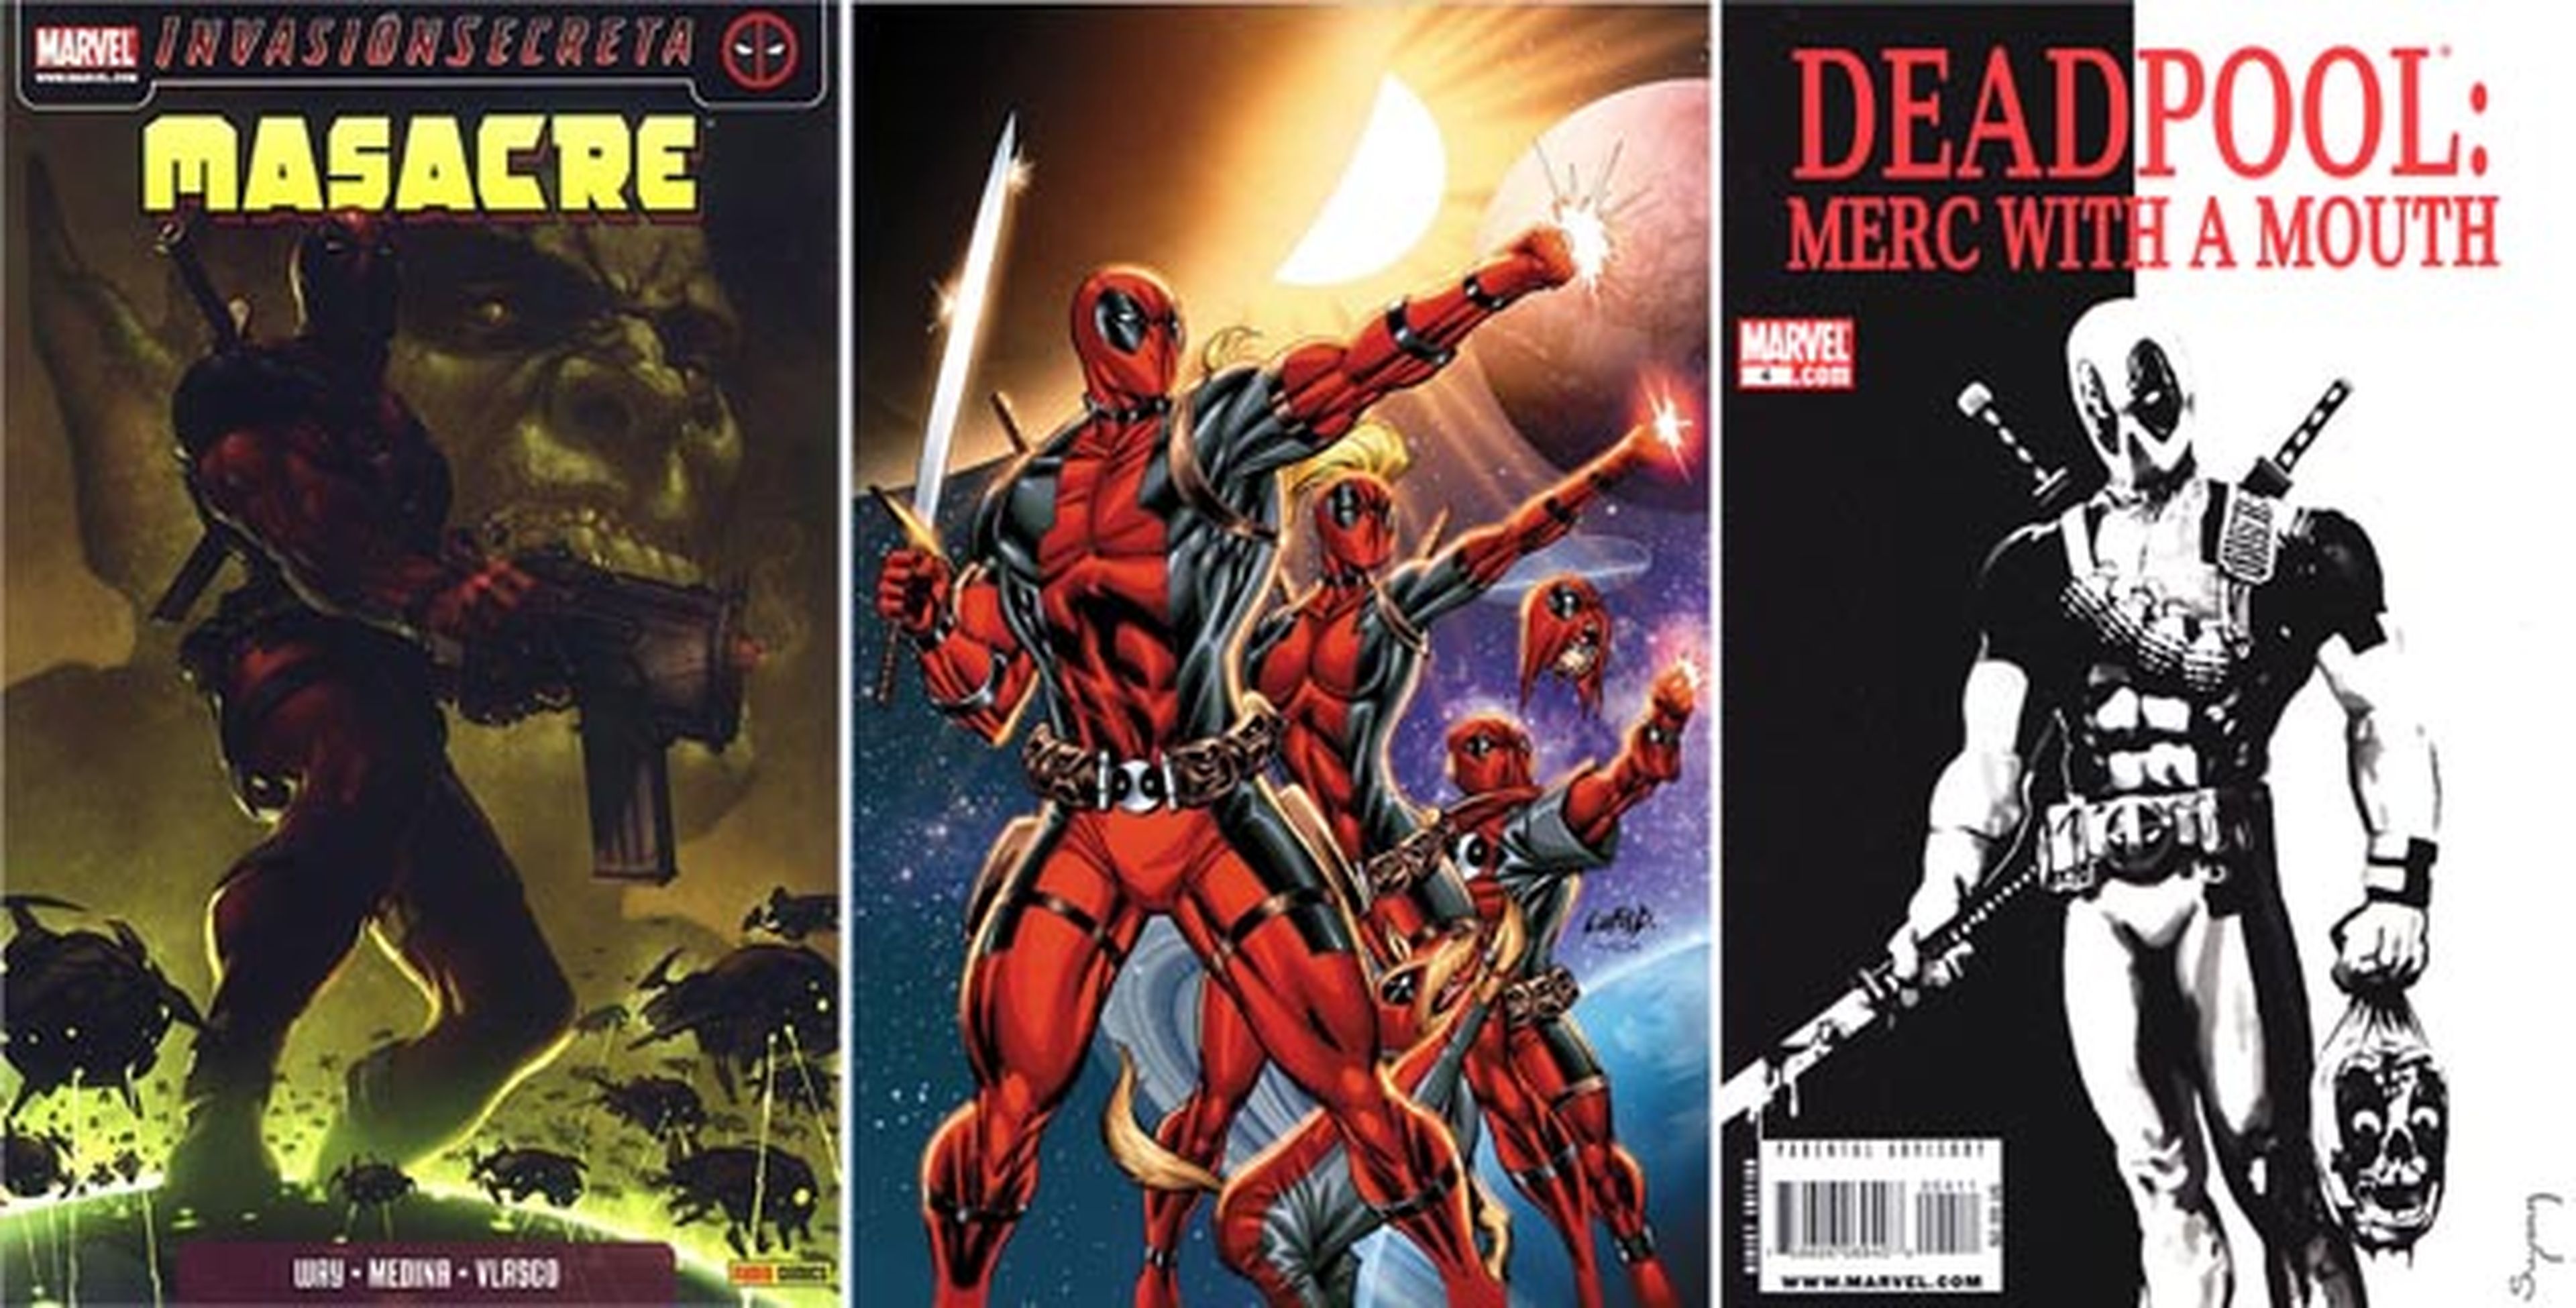 Masacre: Biografía de Deadpool